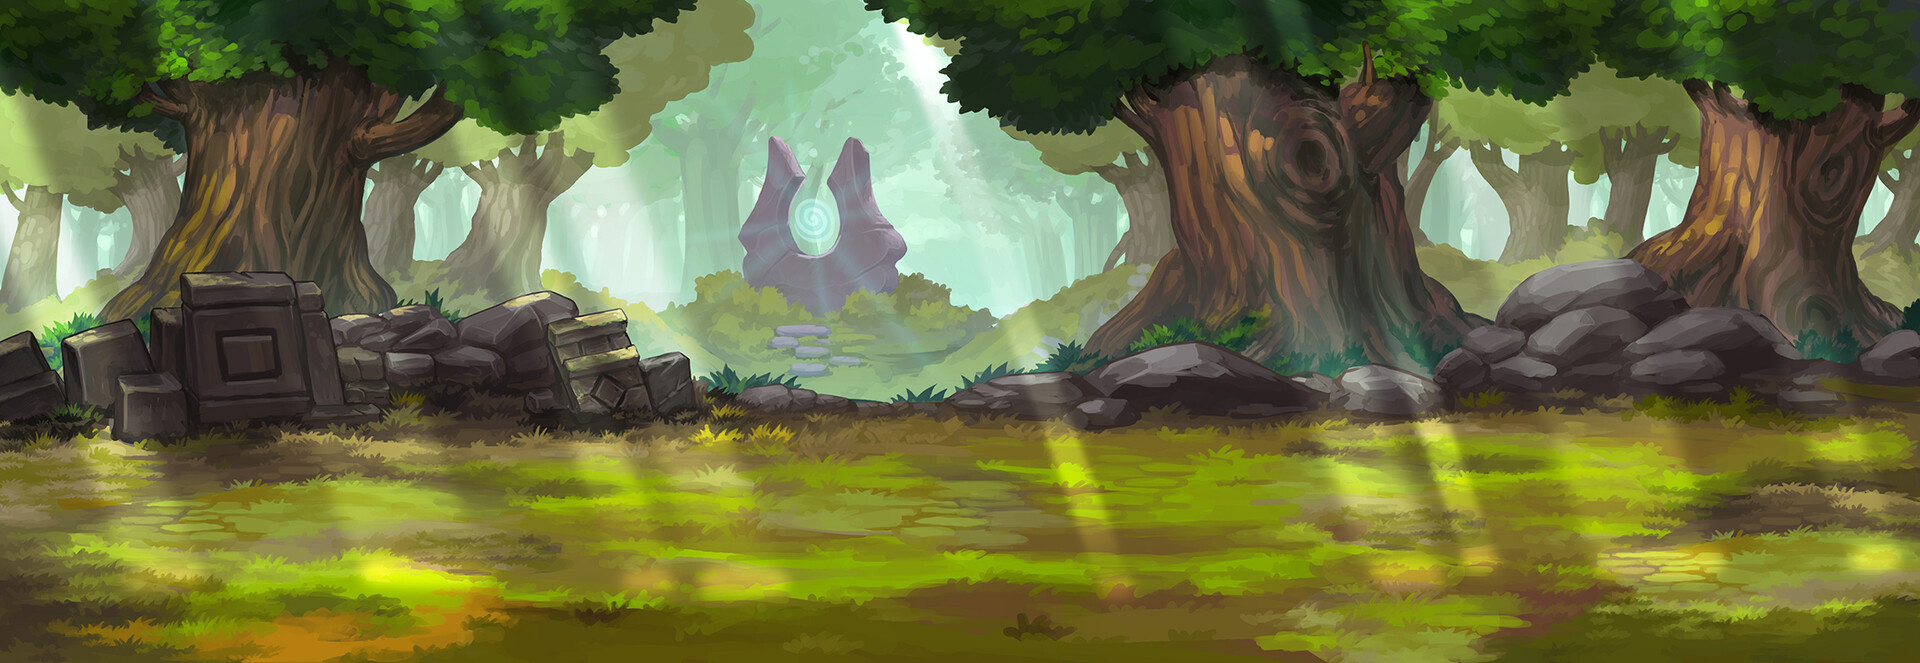 ArtStation - Side scrolling game Background concept - Forest